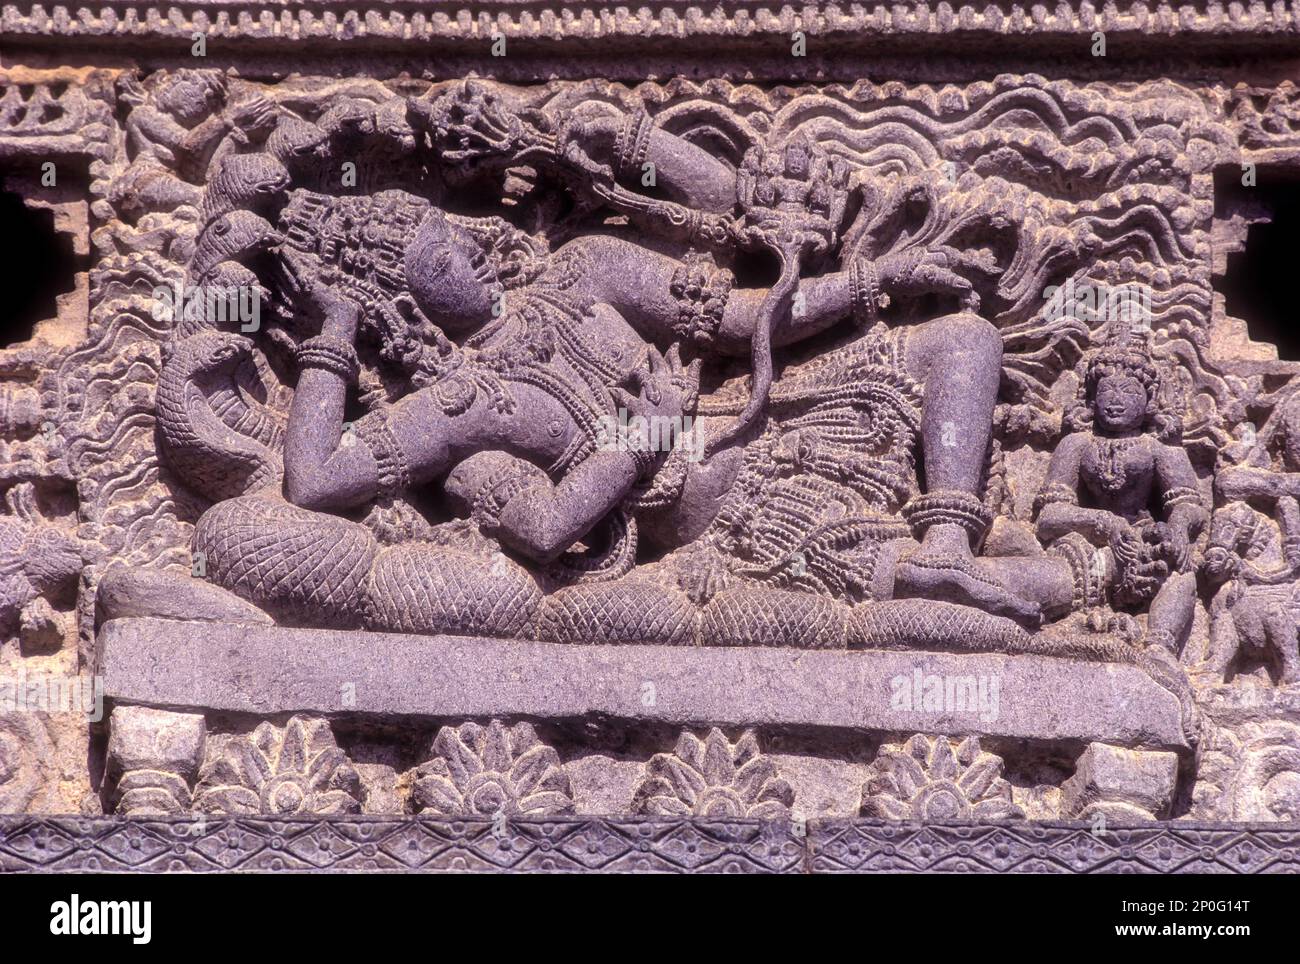 Lord Vishnu couché sur son canapé serpent, temple Sri Chennakhava, temple Hoysala à Belur, Karnataka, Inde du Sud, Inde, Asie. 12th siècle Banque D'Images